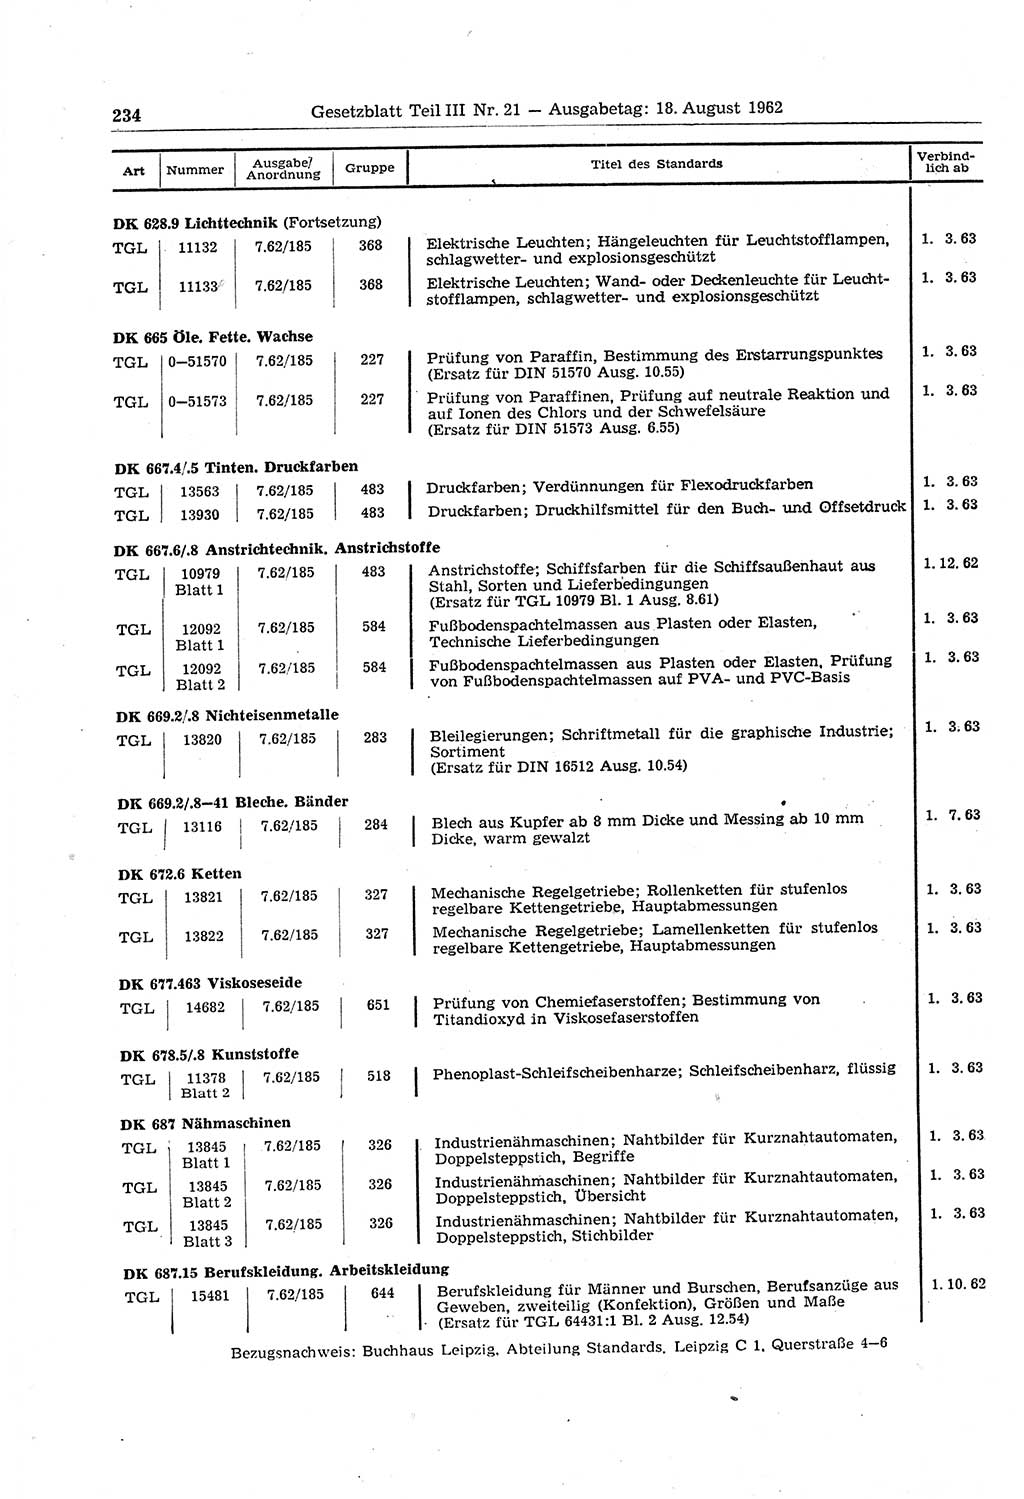 Gesetzblatt (GBl.) der Deutschen Demokratischen Republik (DDR) Teil ⅠⅠⅠ 1962, Seite 234 (GBl. DDR ⅠⅠⅠ 1962, S. 234)